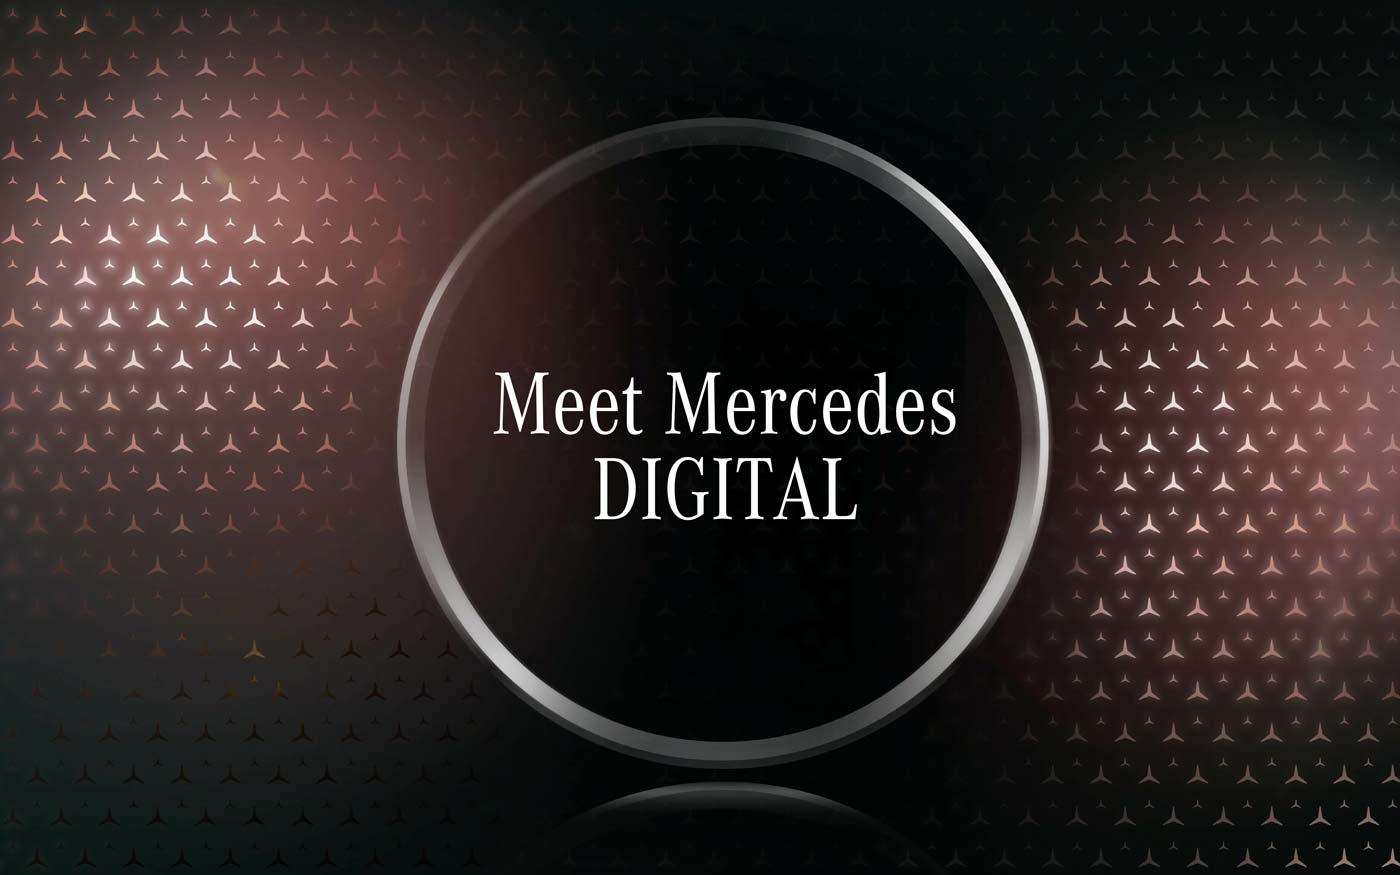 Meet Mercedes Digital